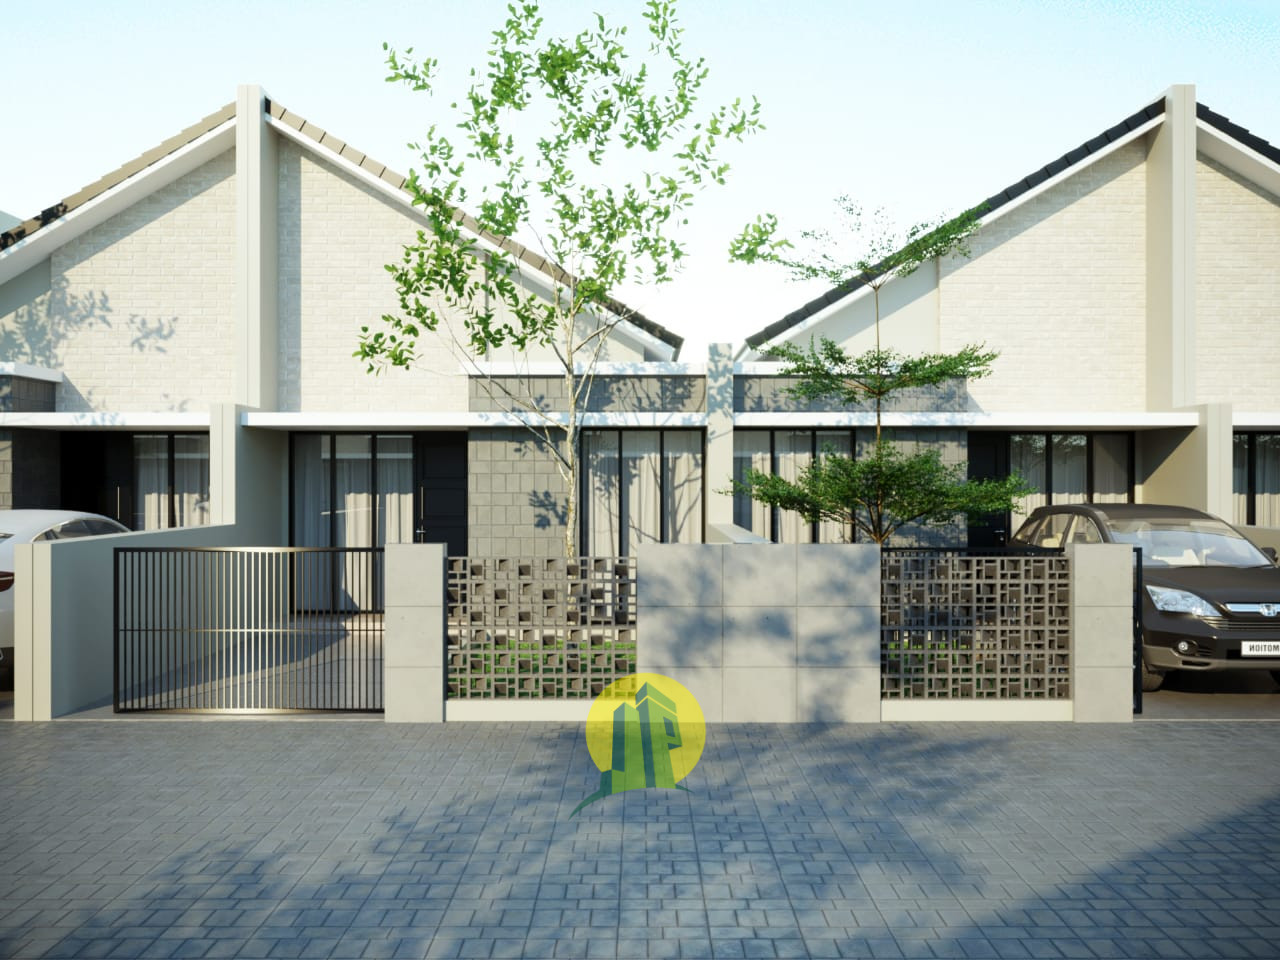 Rumah Cluster exclusive terbaru di rawalumbu kota bekasi